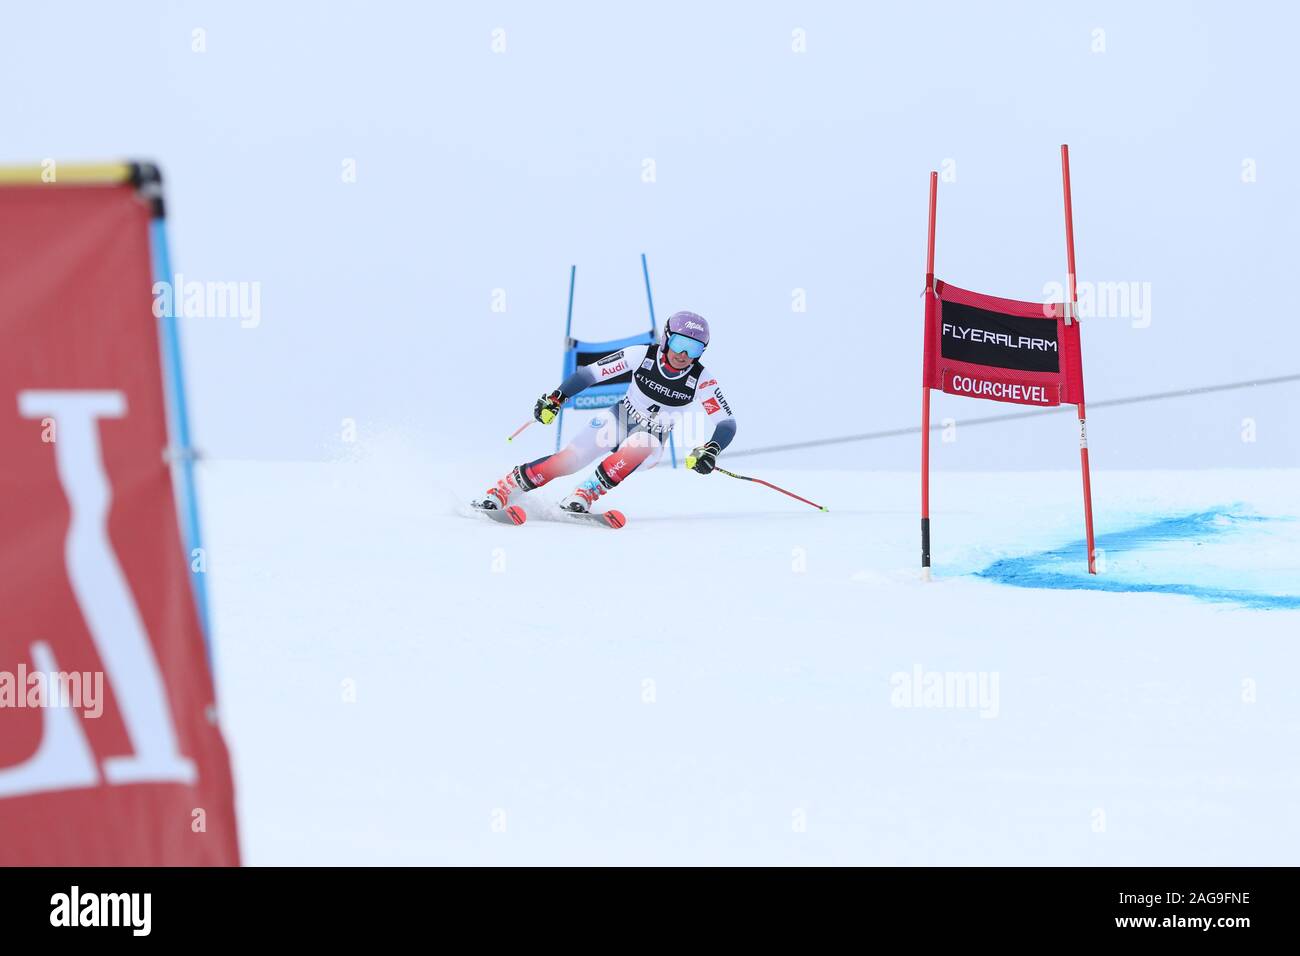 17 dic 2019 Courchevel Francia Tessa Worley Audi FIS Coppa del Mondo di sci alpino 2019/20 Womens Slalom Gigante Sci Sport neve Inverno Invernale Foto Stock